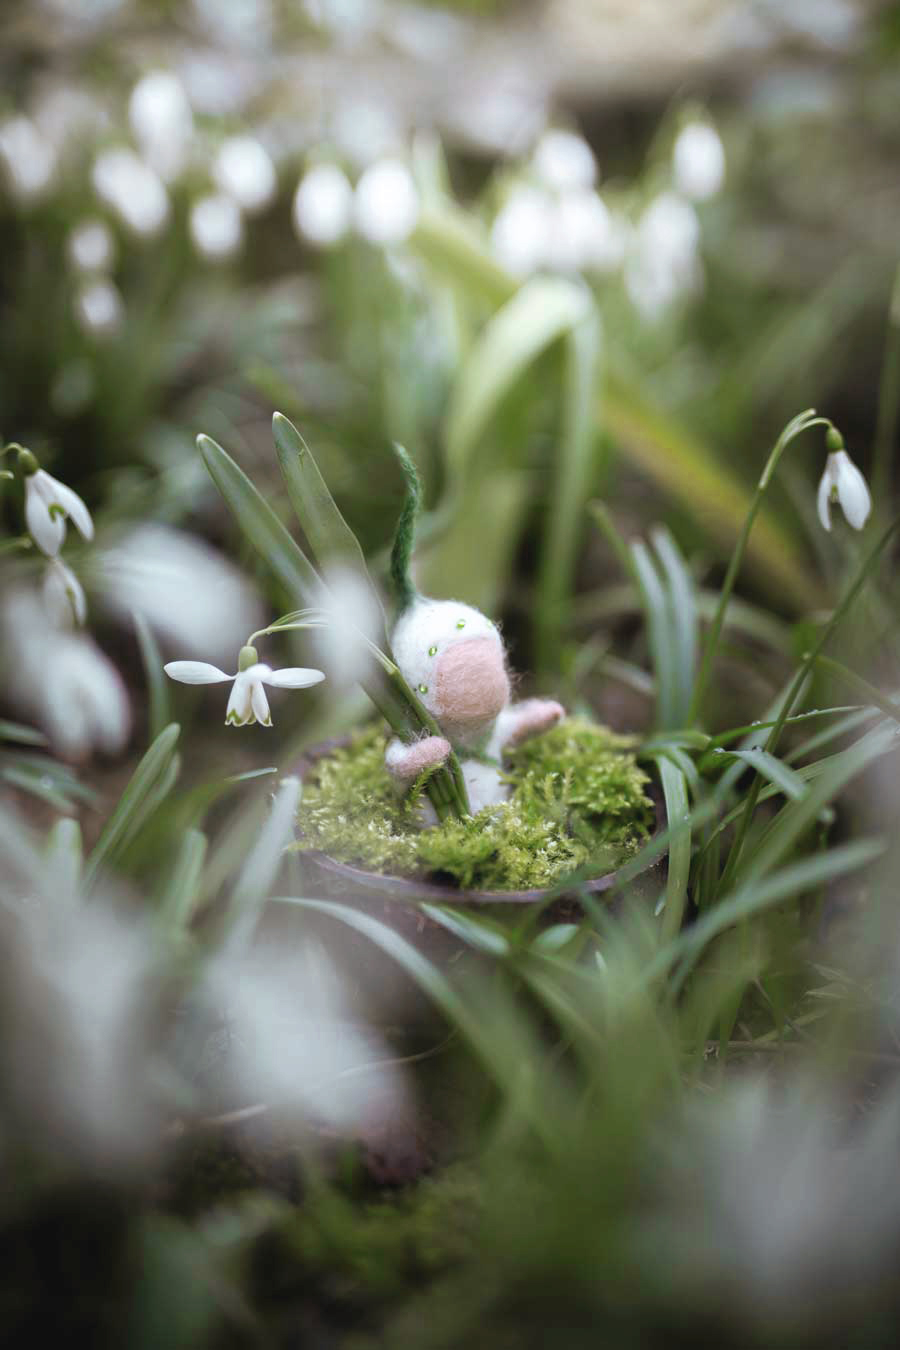 gefilztes Schneeglöckchen-Blumenkind (Baby-Schneeglöckchen) für den Waldorf-Jahreszeitentisch